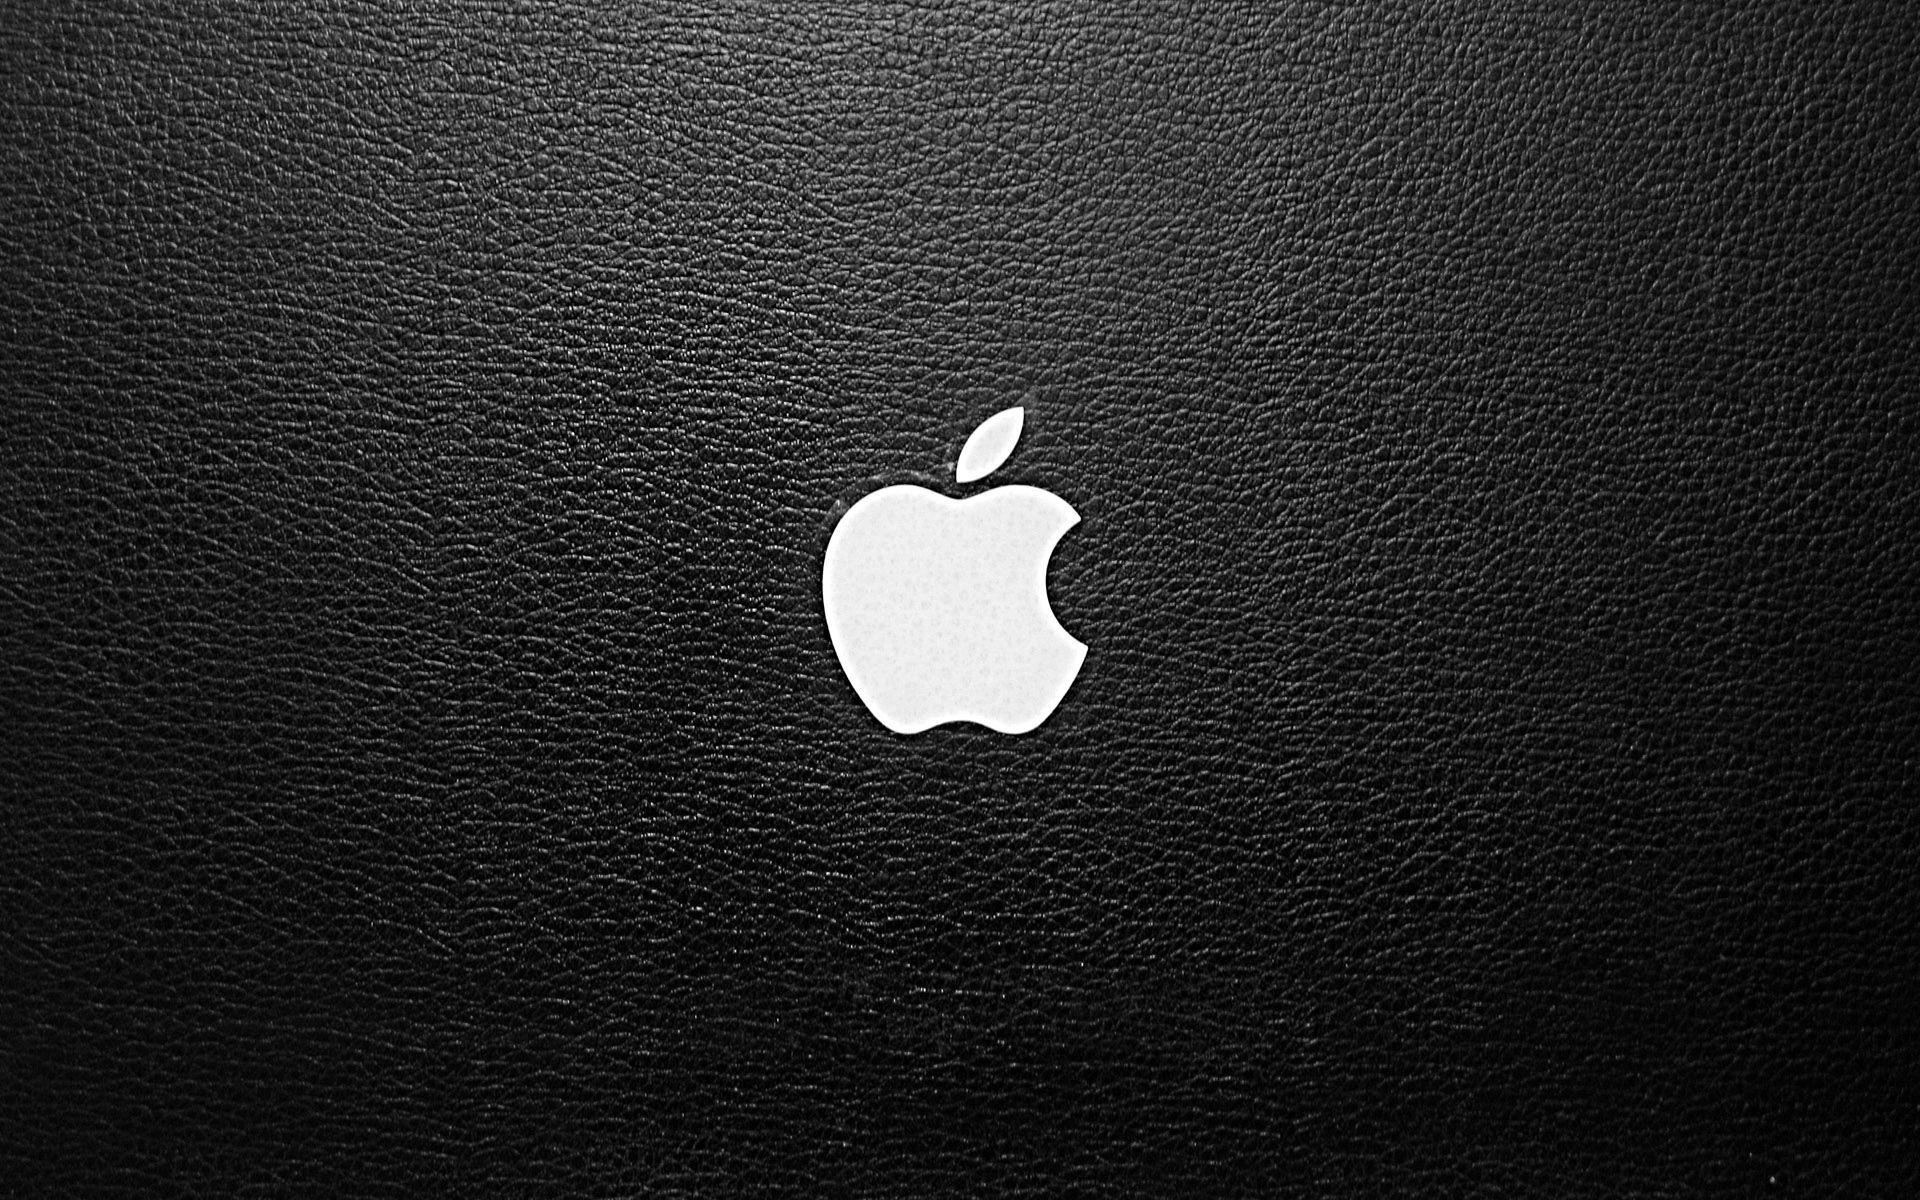 Apple MacBook Air Wallpapers Top Free Apple MacBook Air Backgrounds